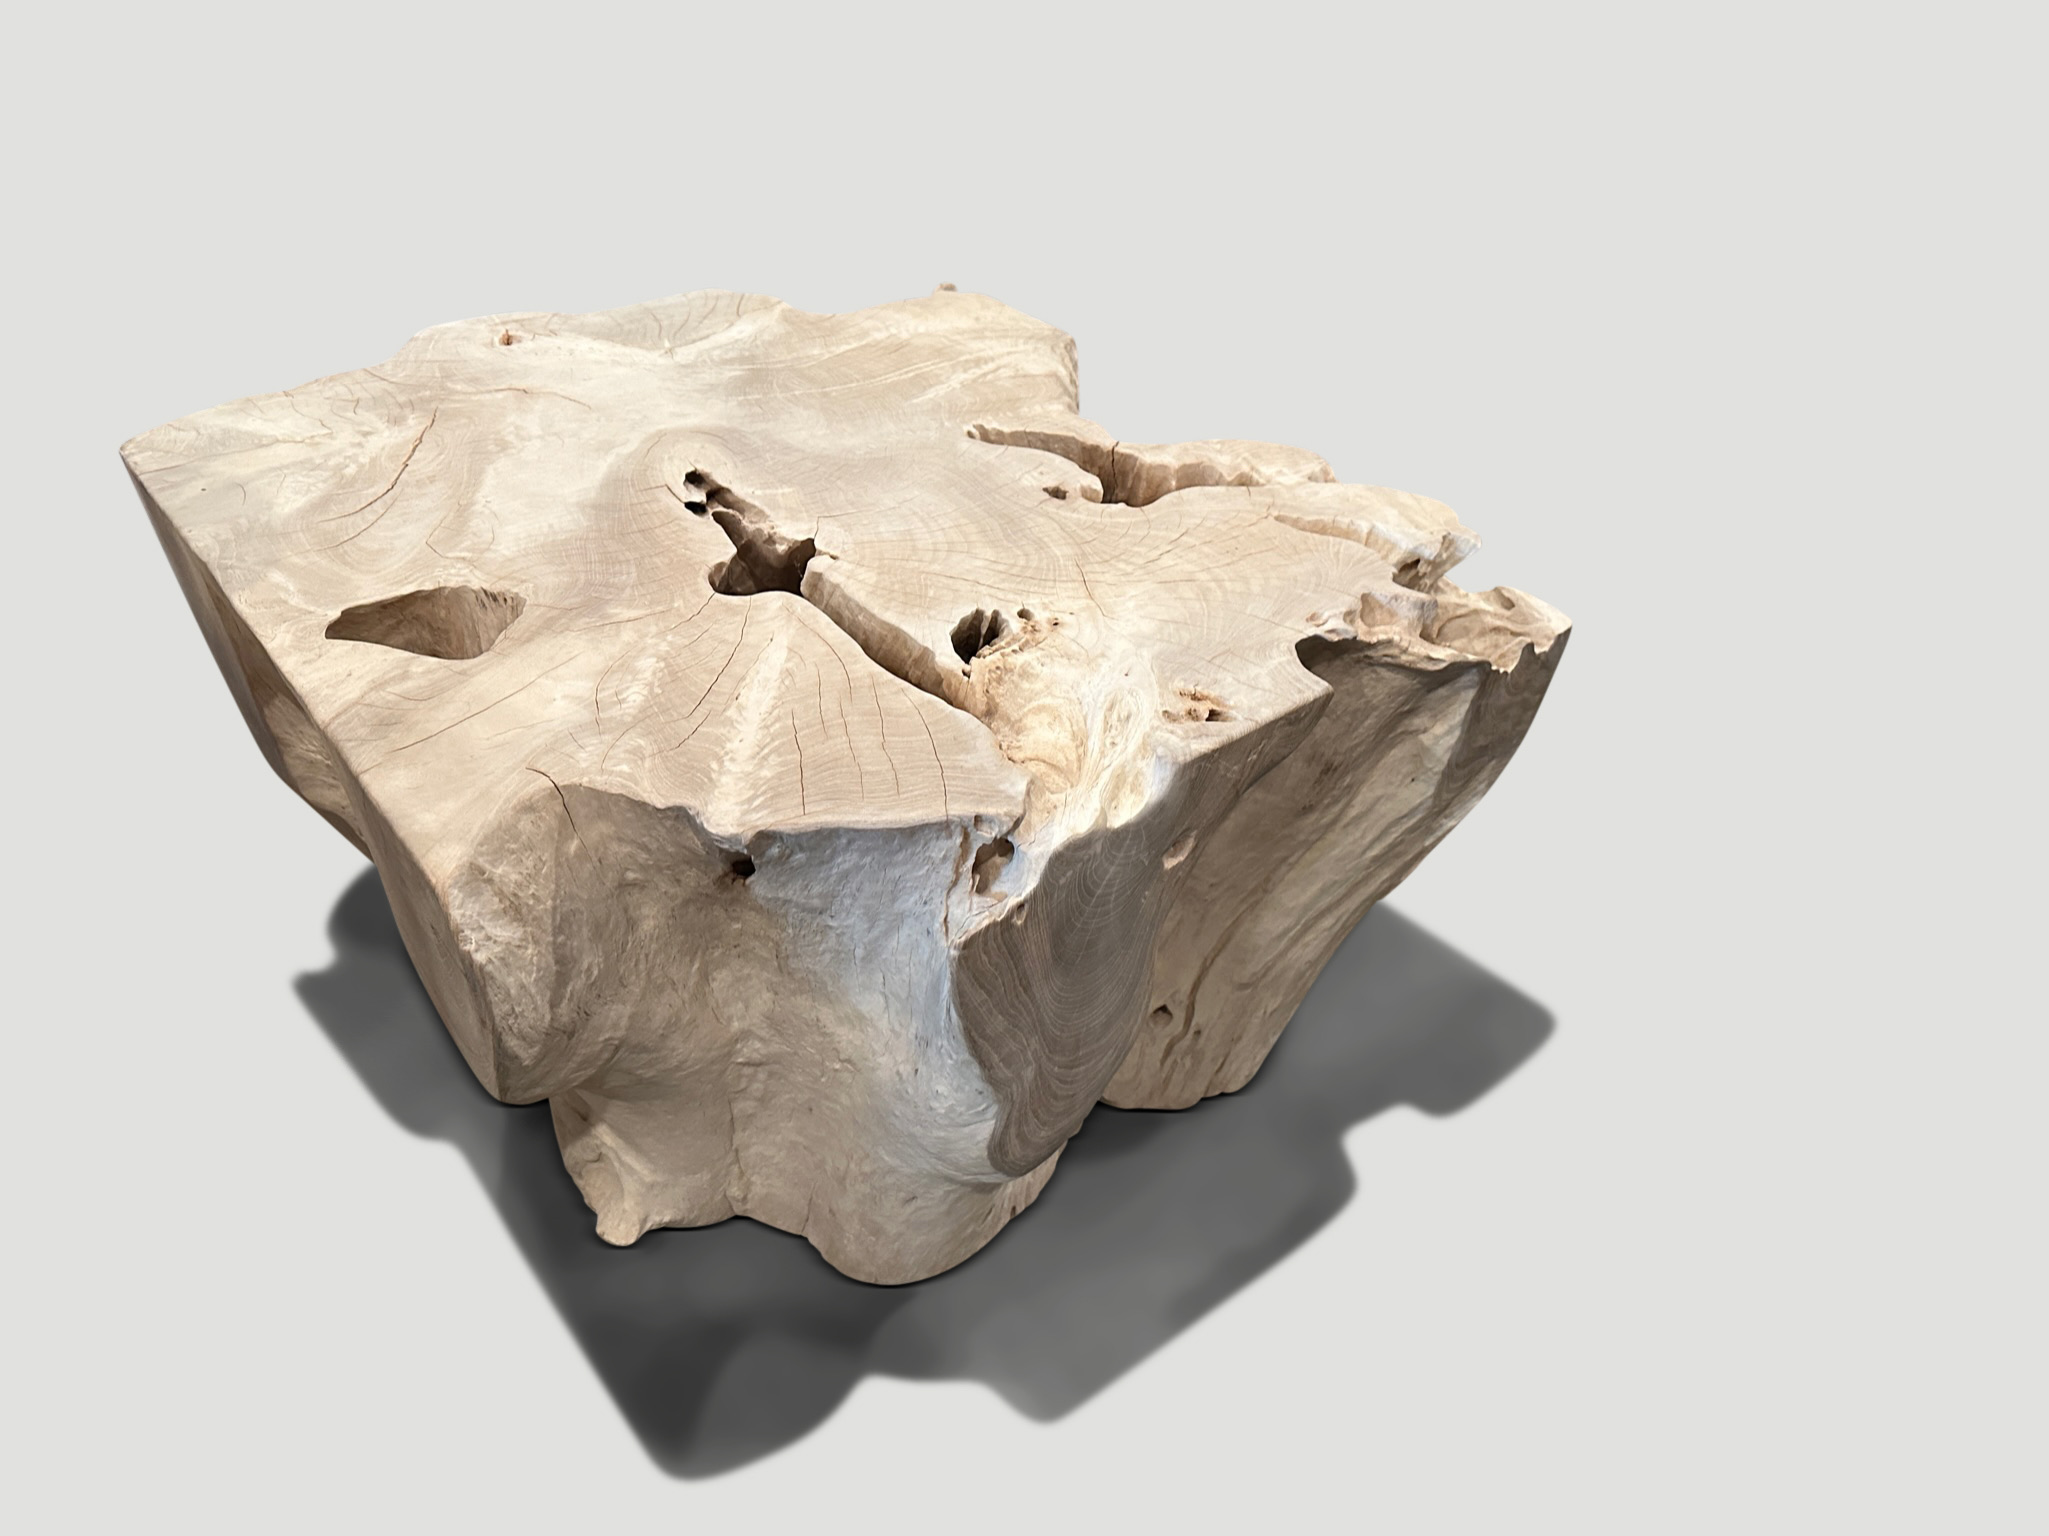 bleached teak root coffee table or pedestal